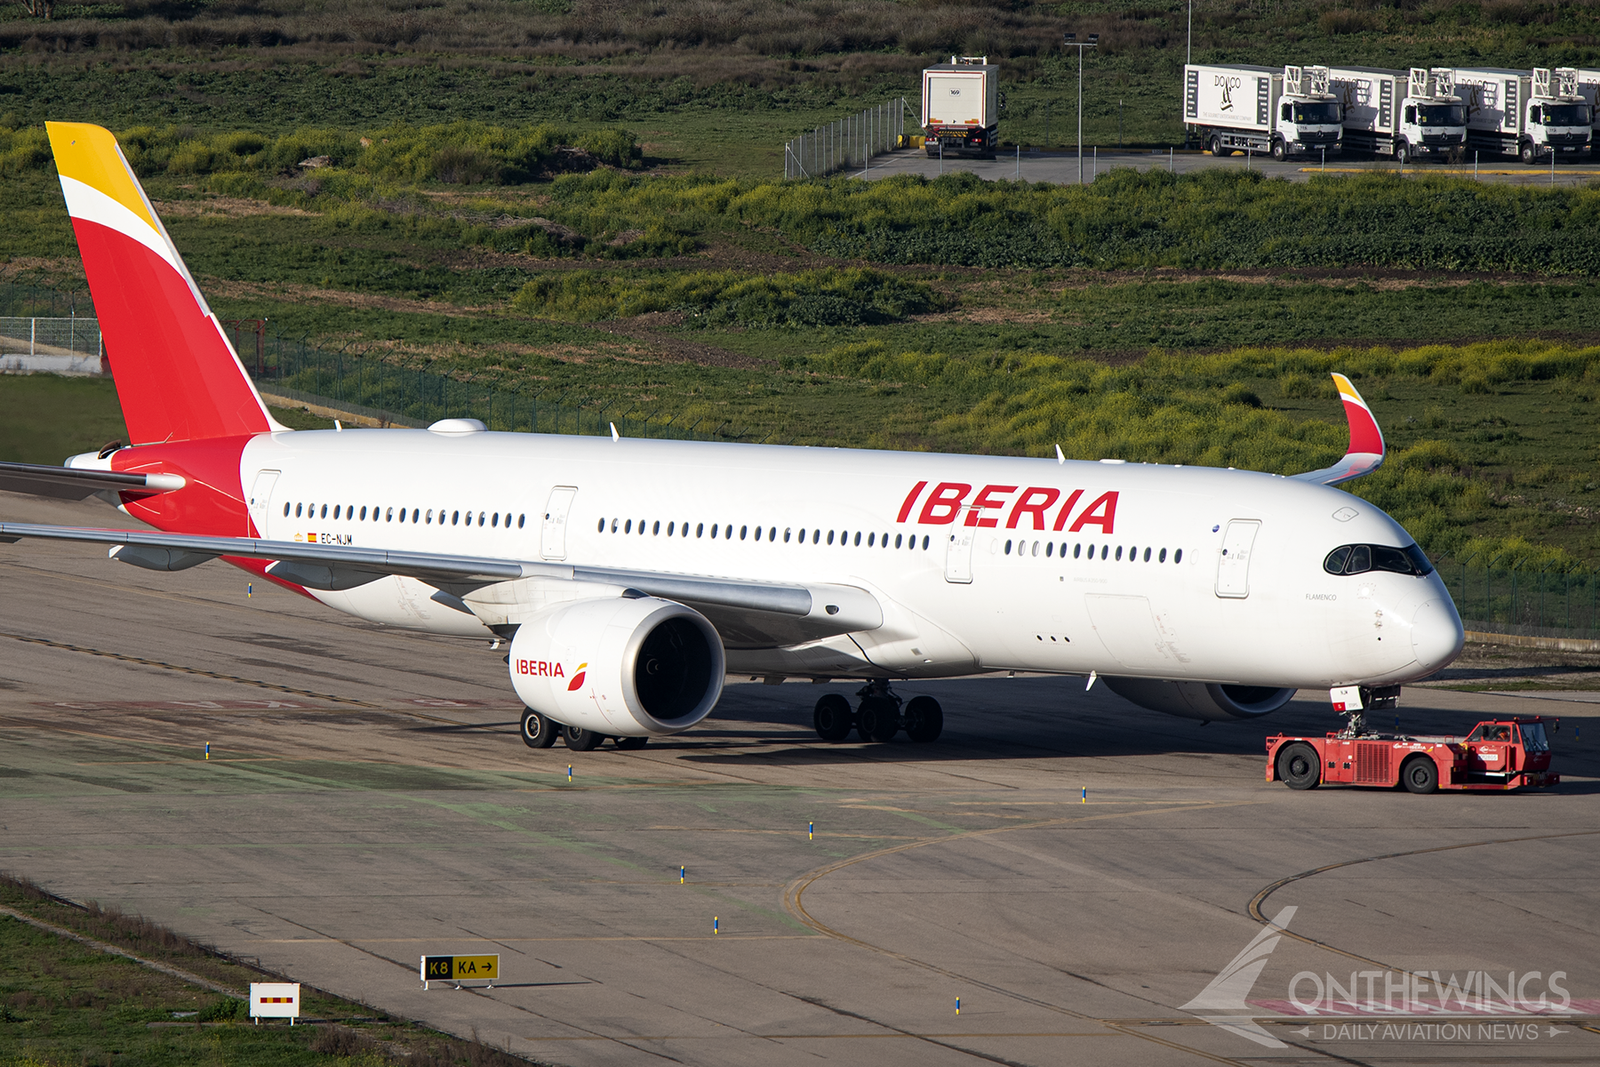 El Airbus A350 EC-NJM de Iberia saliendo de mantenimiento el 23 de febrero. Unas horas después volaría a Buenos Aires.